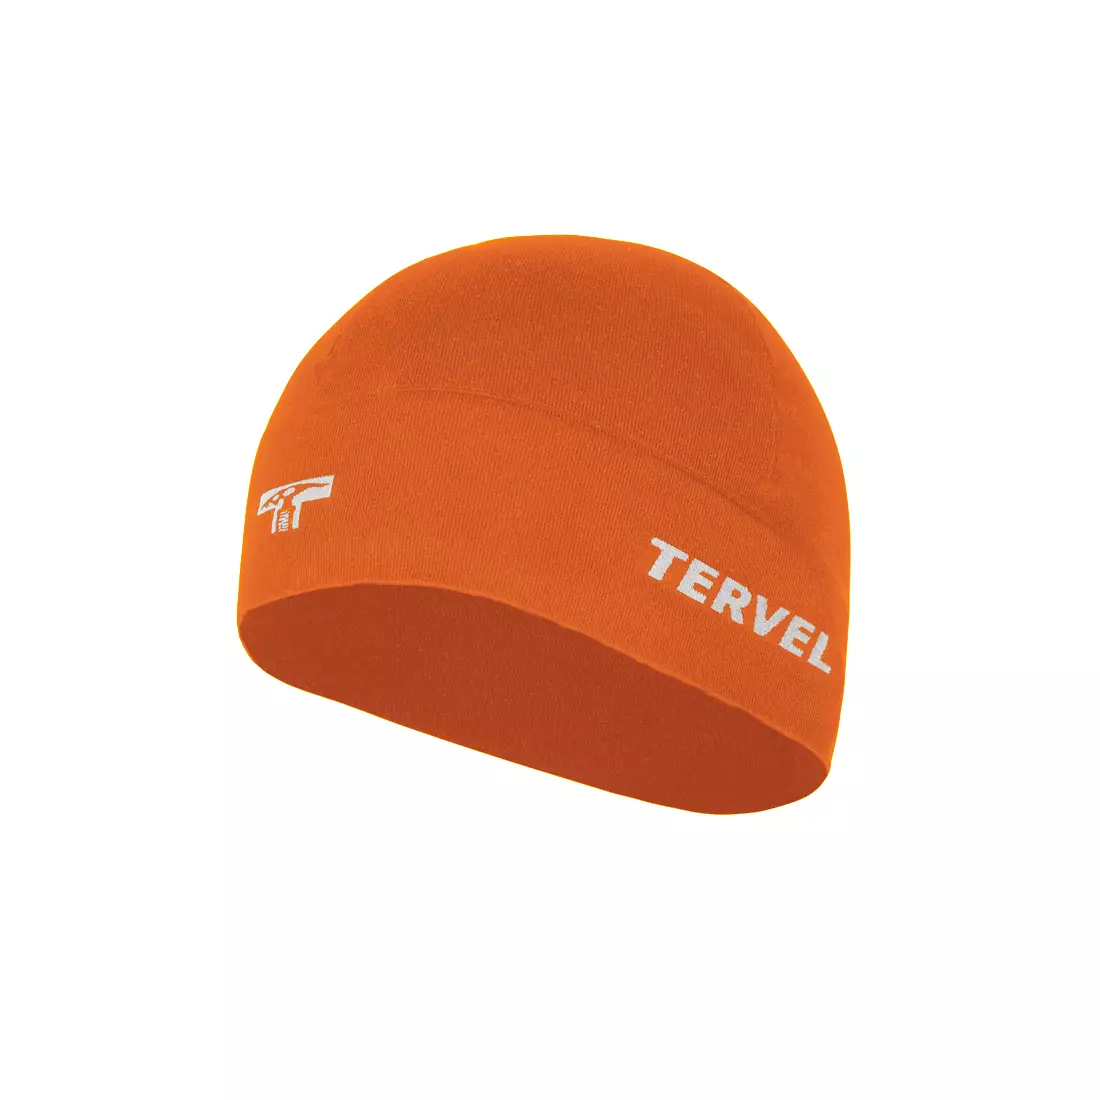 TERVEL 7001 - COMFORTLINE - tréninková čepice, barva: Oranžová, velikost: Univerzální